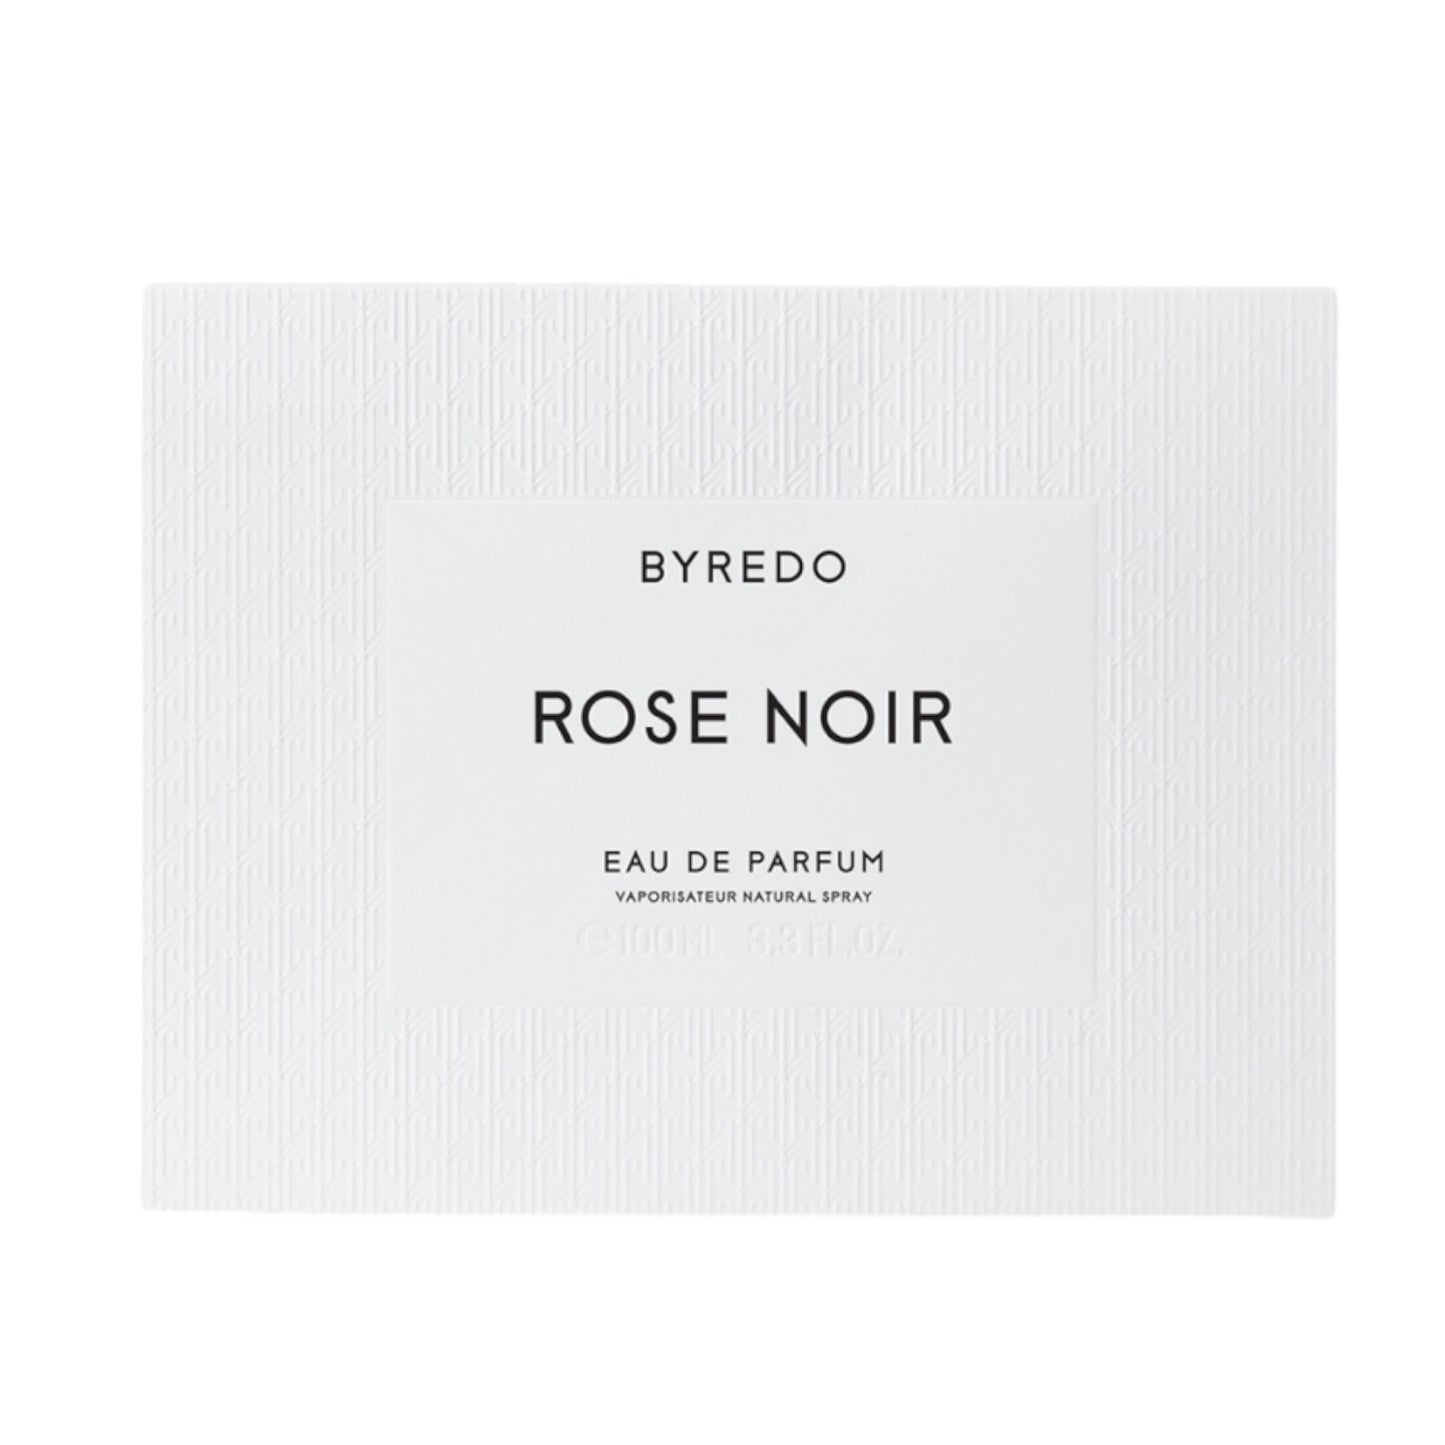 BYREDO Rose Noir Eau de Parfum